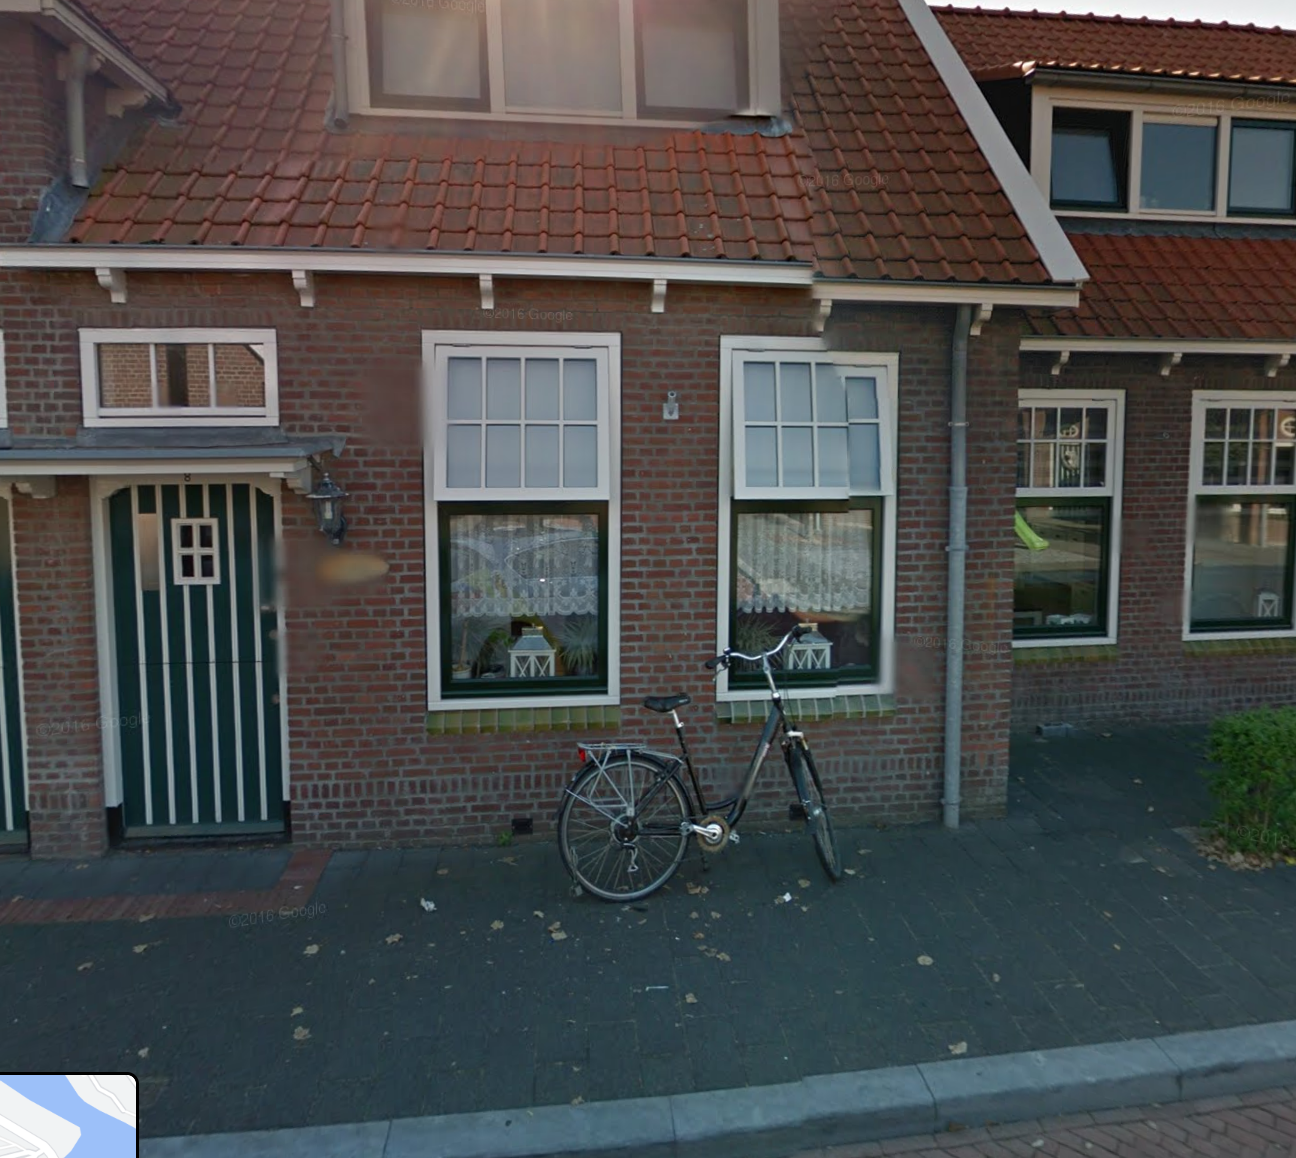 Cattenstraat 8, 2225 VK Katwijk aan Zee, Nederland